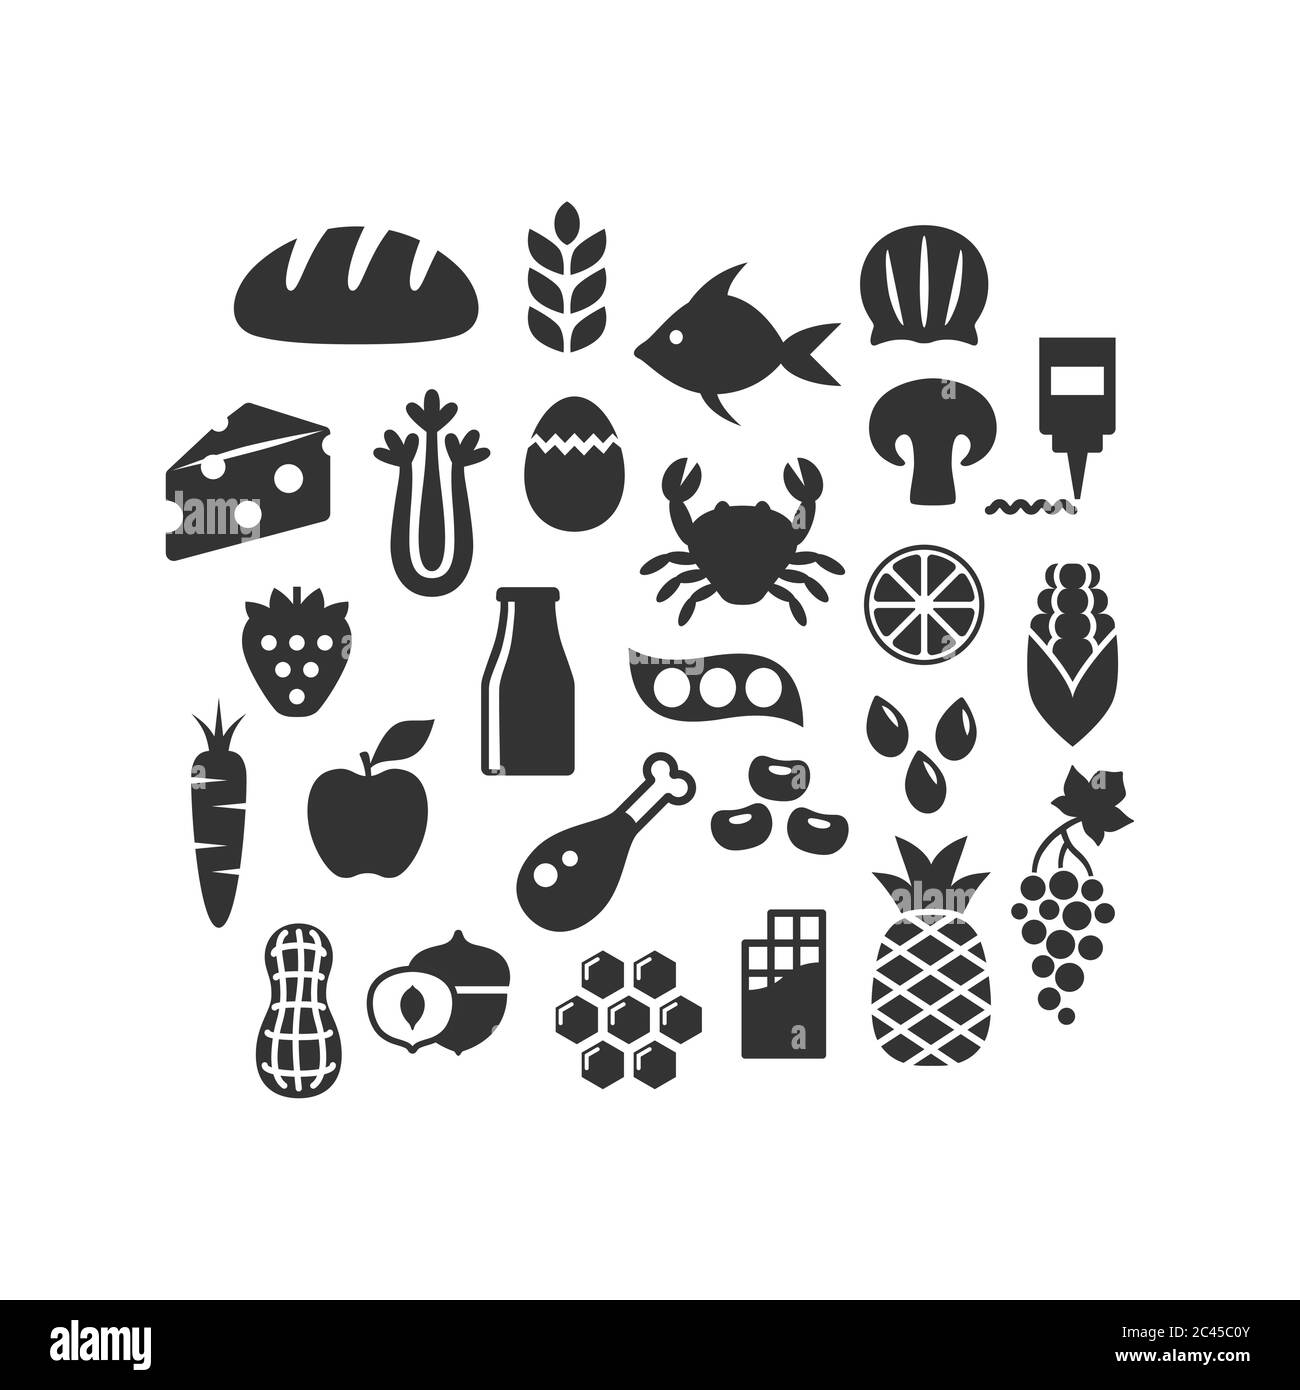 Lebensmittel, Obst, Gemüse und Milchprodukte schwarz isoliert Vektor-Symbol-Set. Lebensmittel Zutaten, Fleisch, Meeresfrüchte, Nüsse Glyphe Silhouette Symbole. Stock Vektor